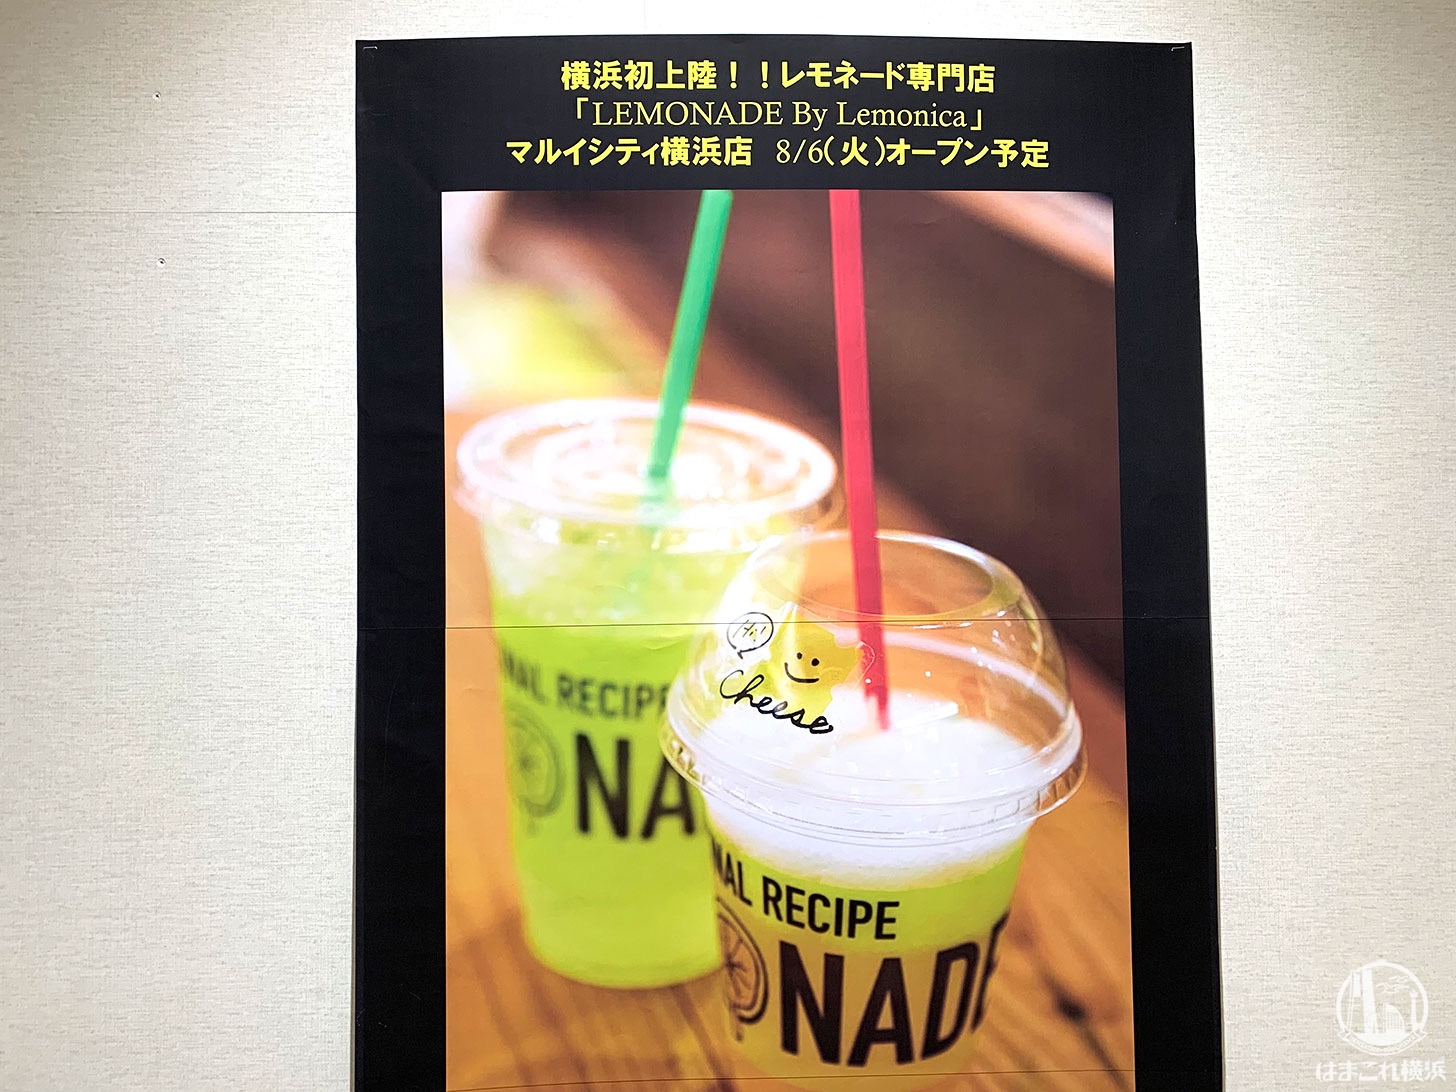 レモネード専門店「レモネードbyレモニカ」横浜駅のマルイに8月 